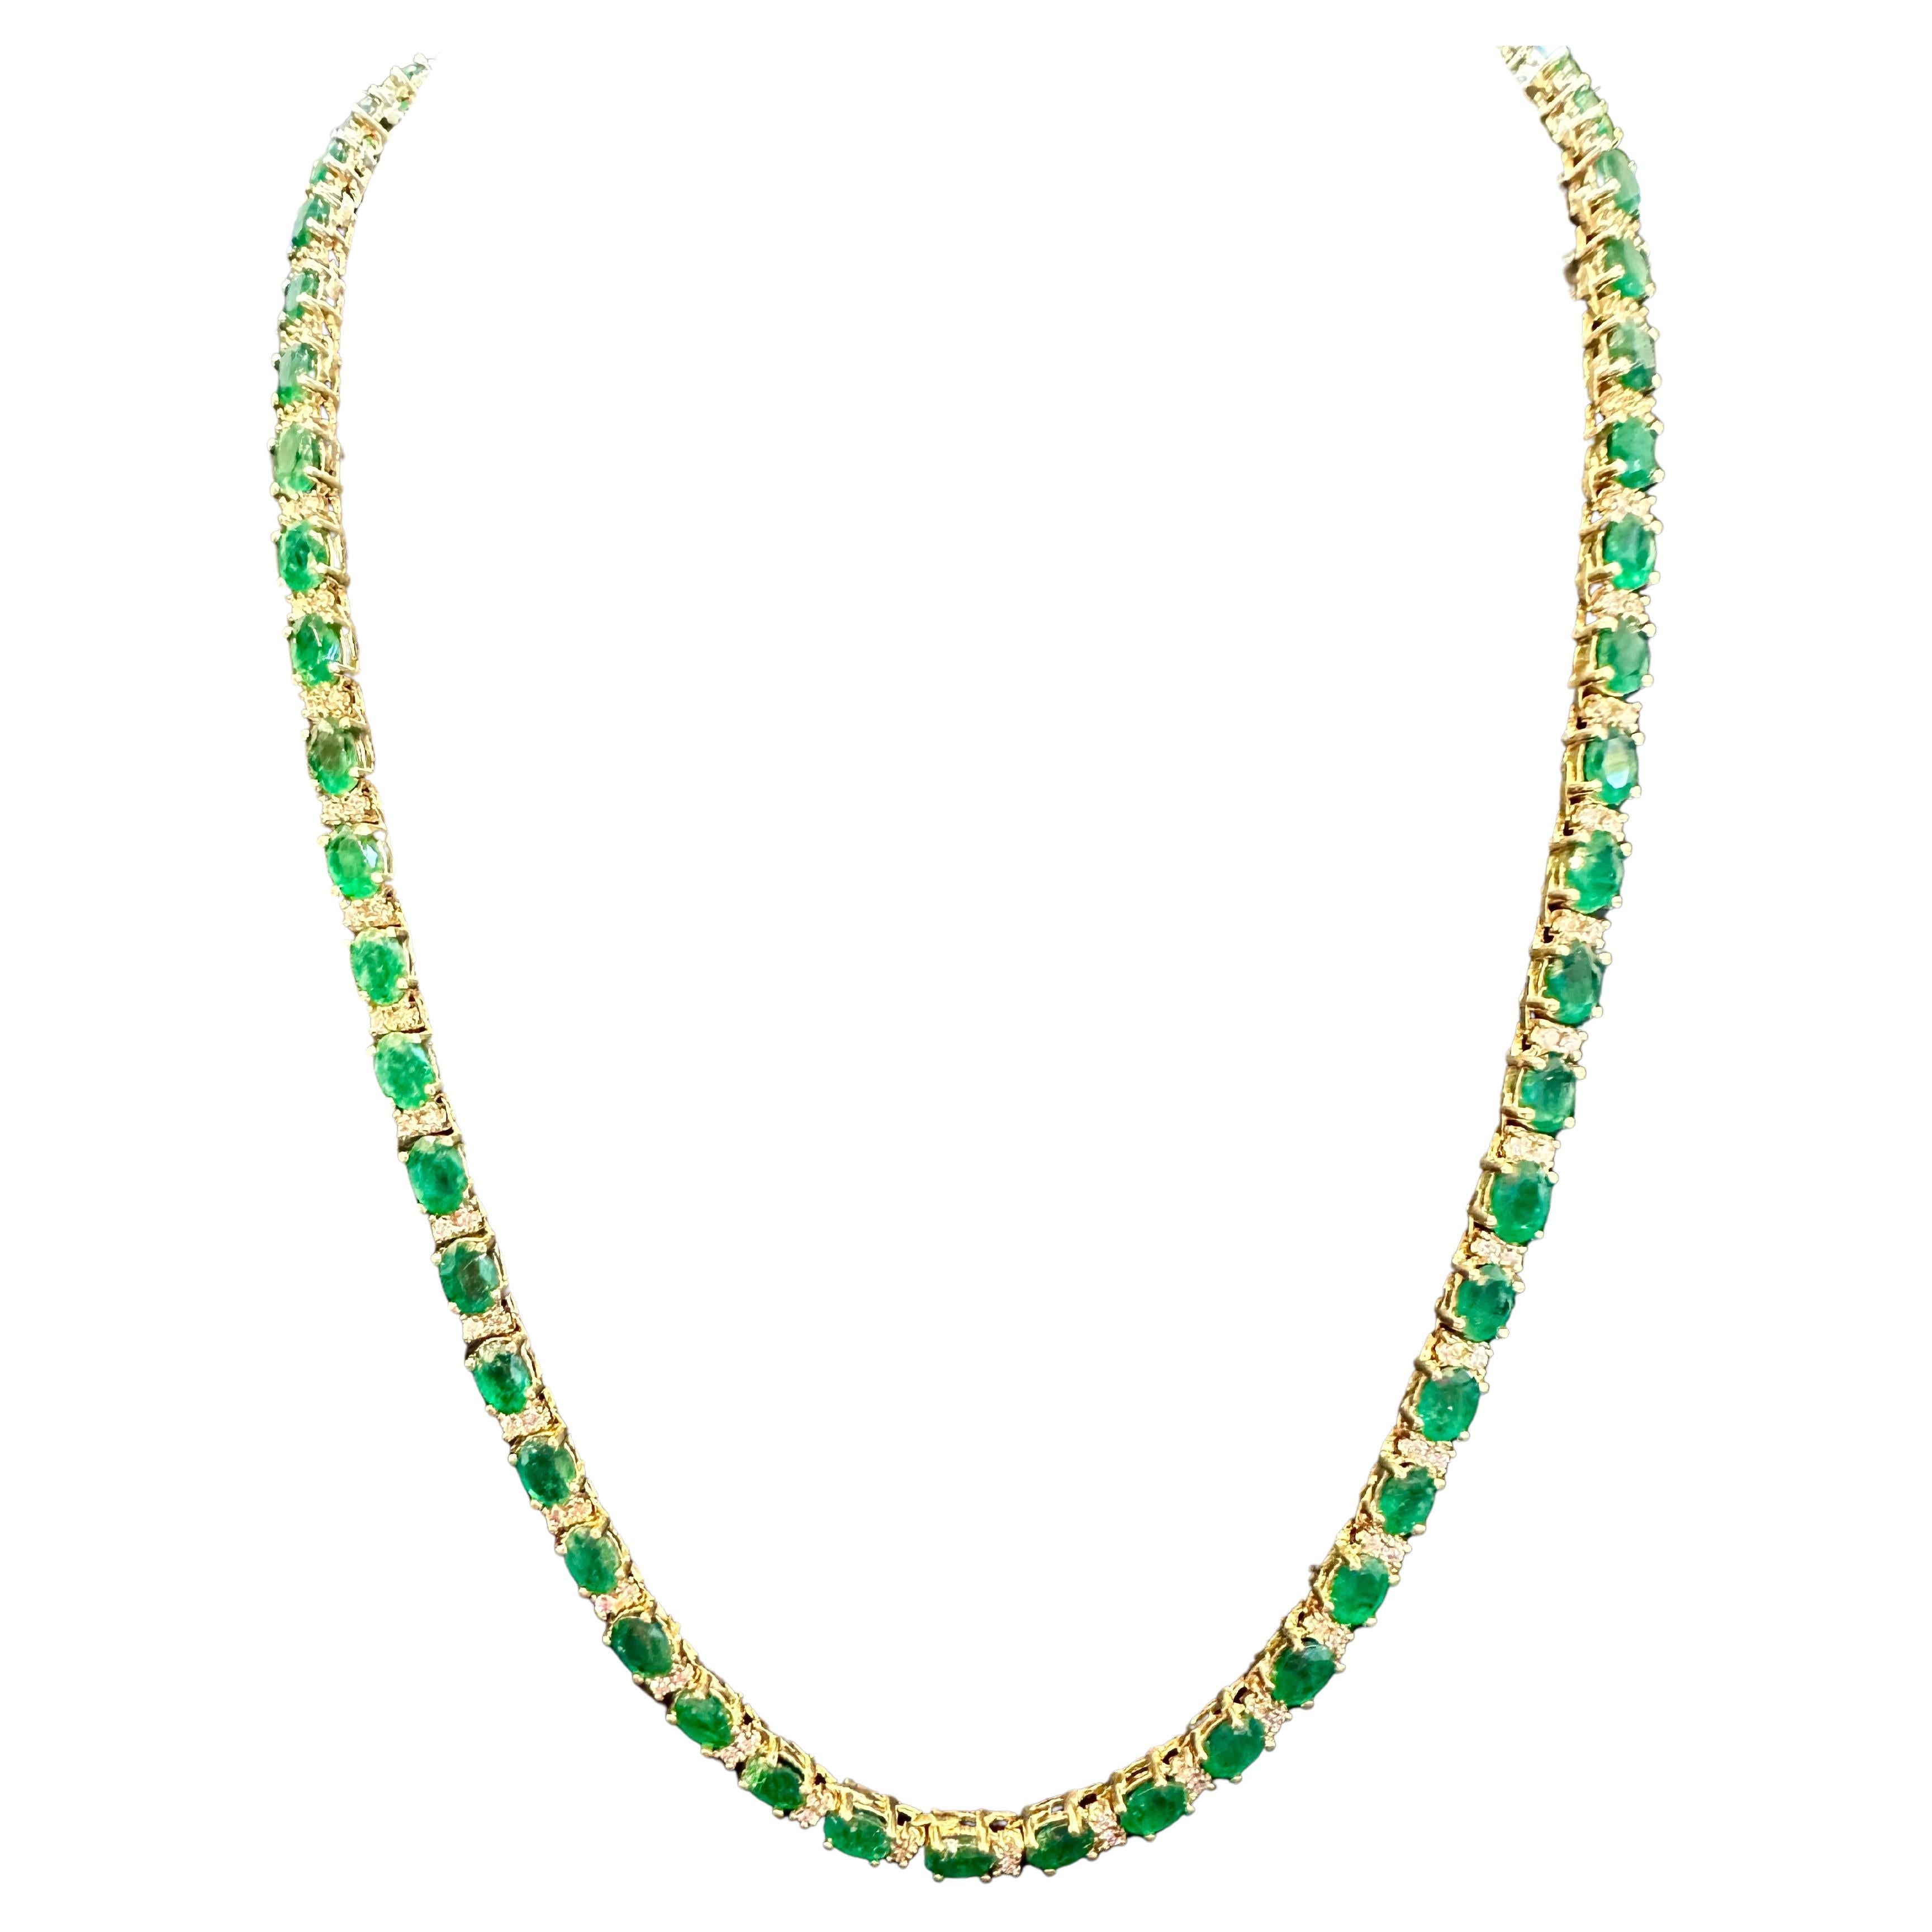 30 Carat Oval Brazilian Emerald & 3 Carat Diamond Tennis Necklace 14 Karat Gold For Sale